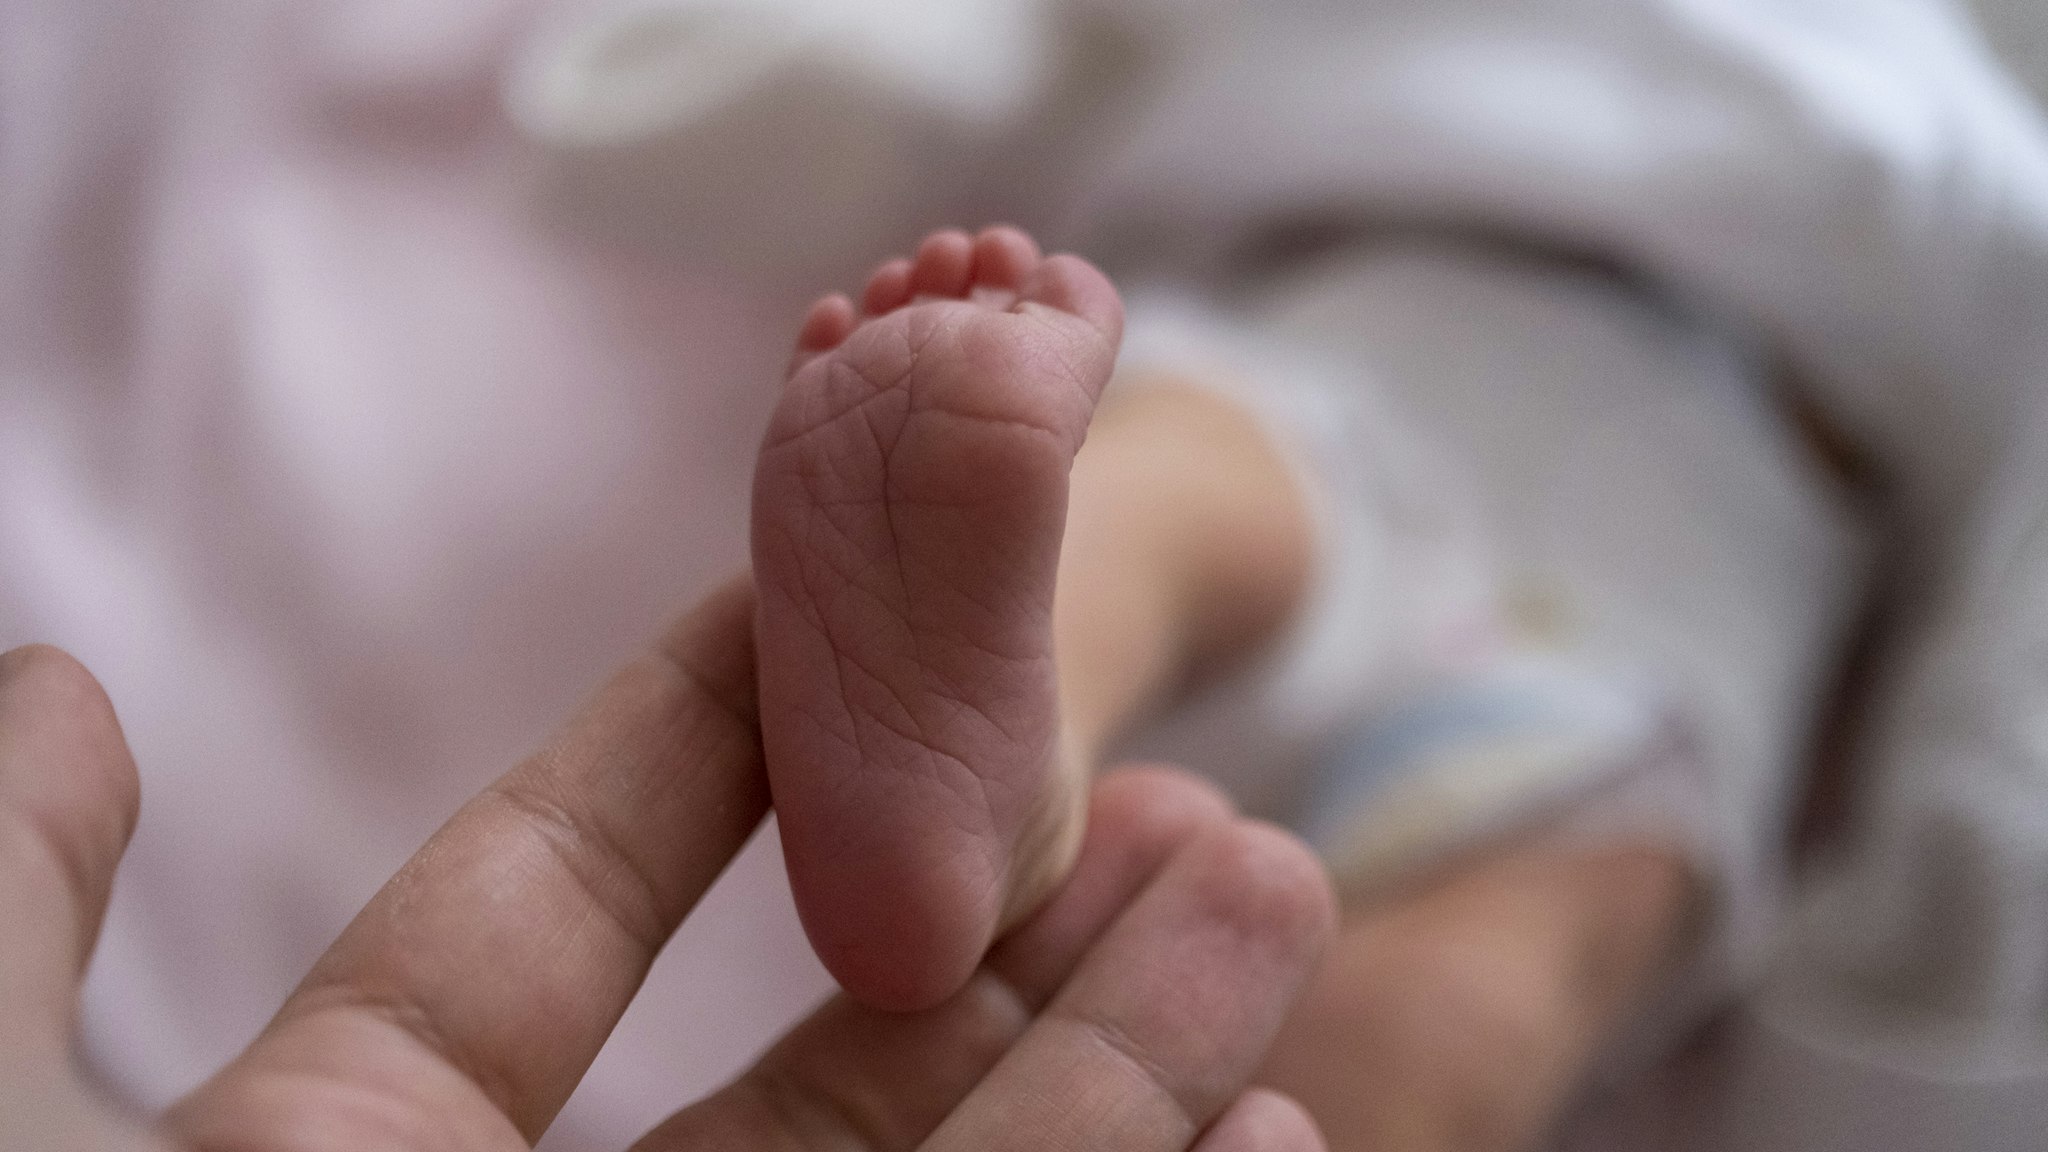 Newborn baby health - stock photo